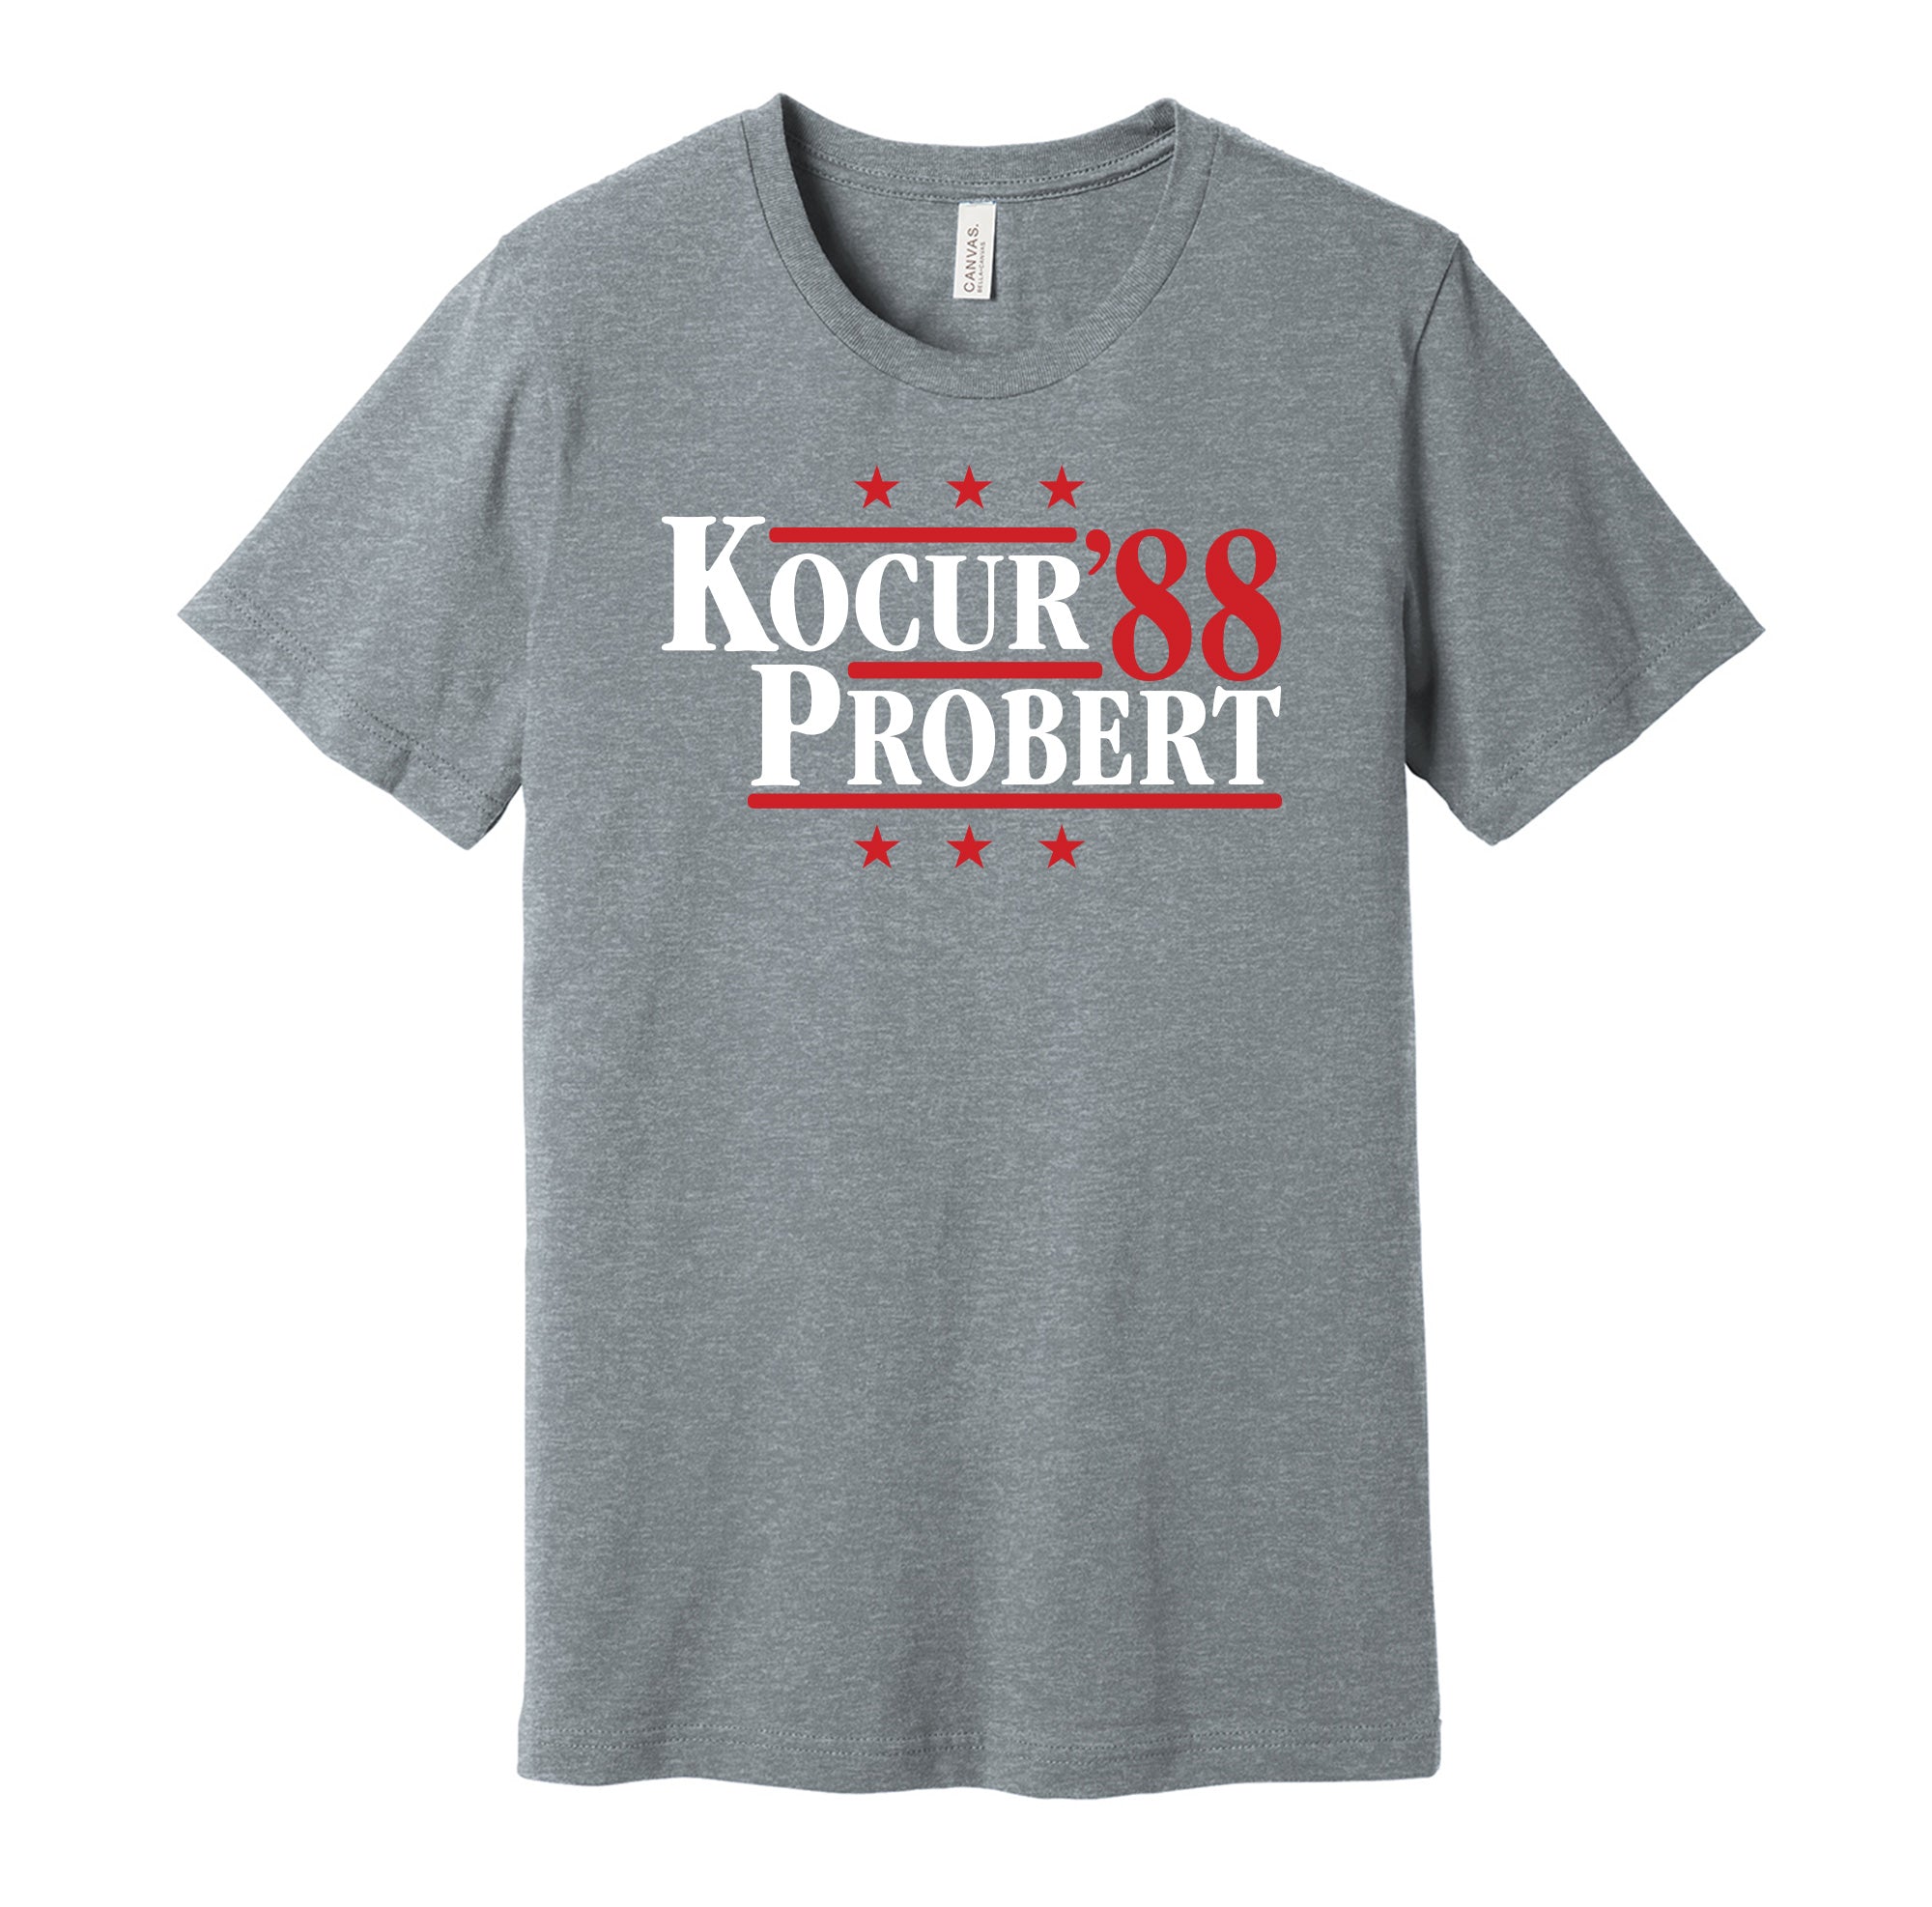 Detroit Probert T-Shirts for Sale